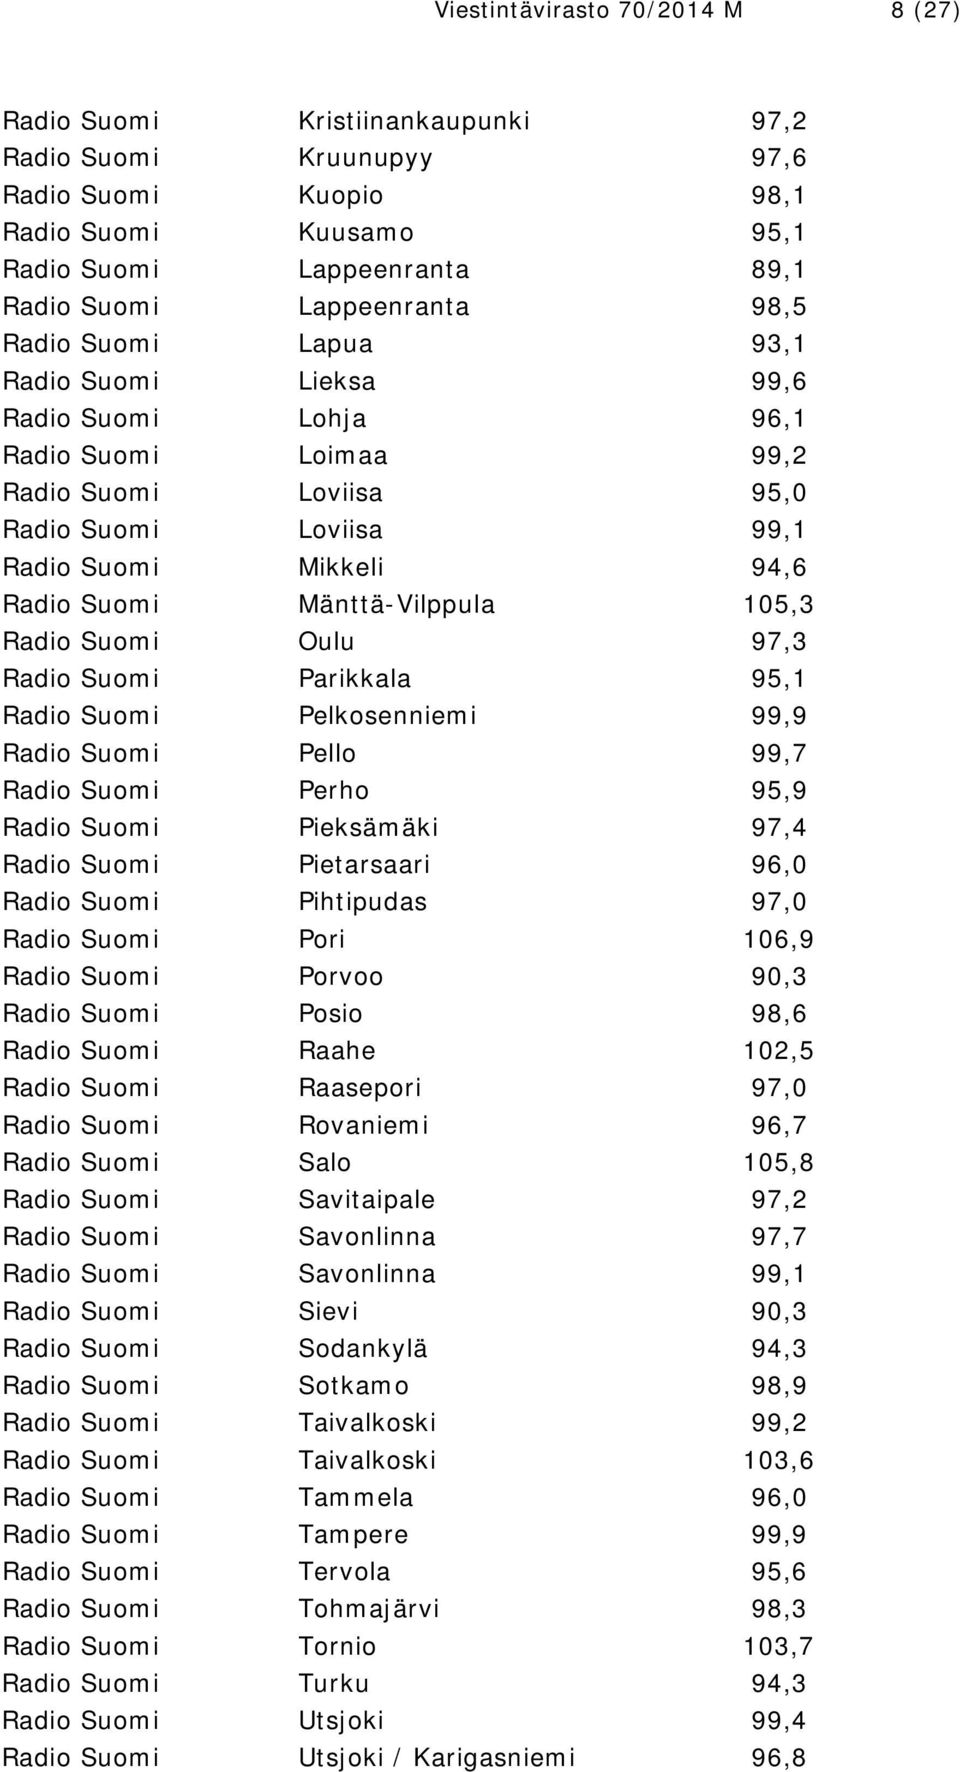 Mänttä-Vilppula 105,3 Radio Suomi Oulu 97,3 Radio Suomi Parikkala 95,1 Radio Suomi Pelkosenniemi 99,9 Radio Suomi Pello 99,7 Radio Suomi Perho 95,9 Radio Suomi Pieksämäki 97,4 Radio Suomi Pietarsaari